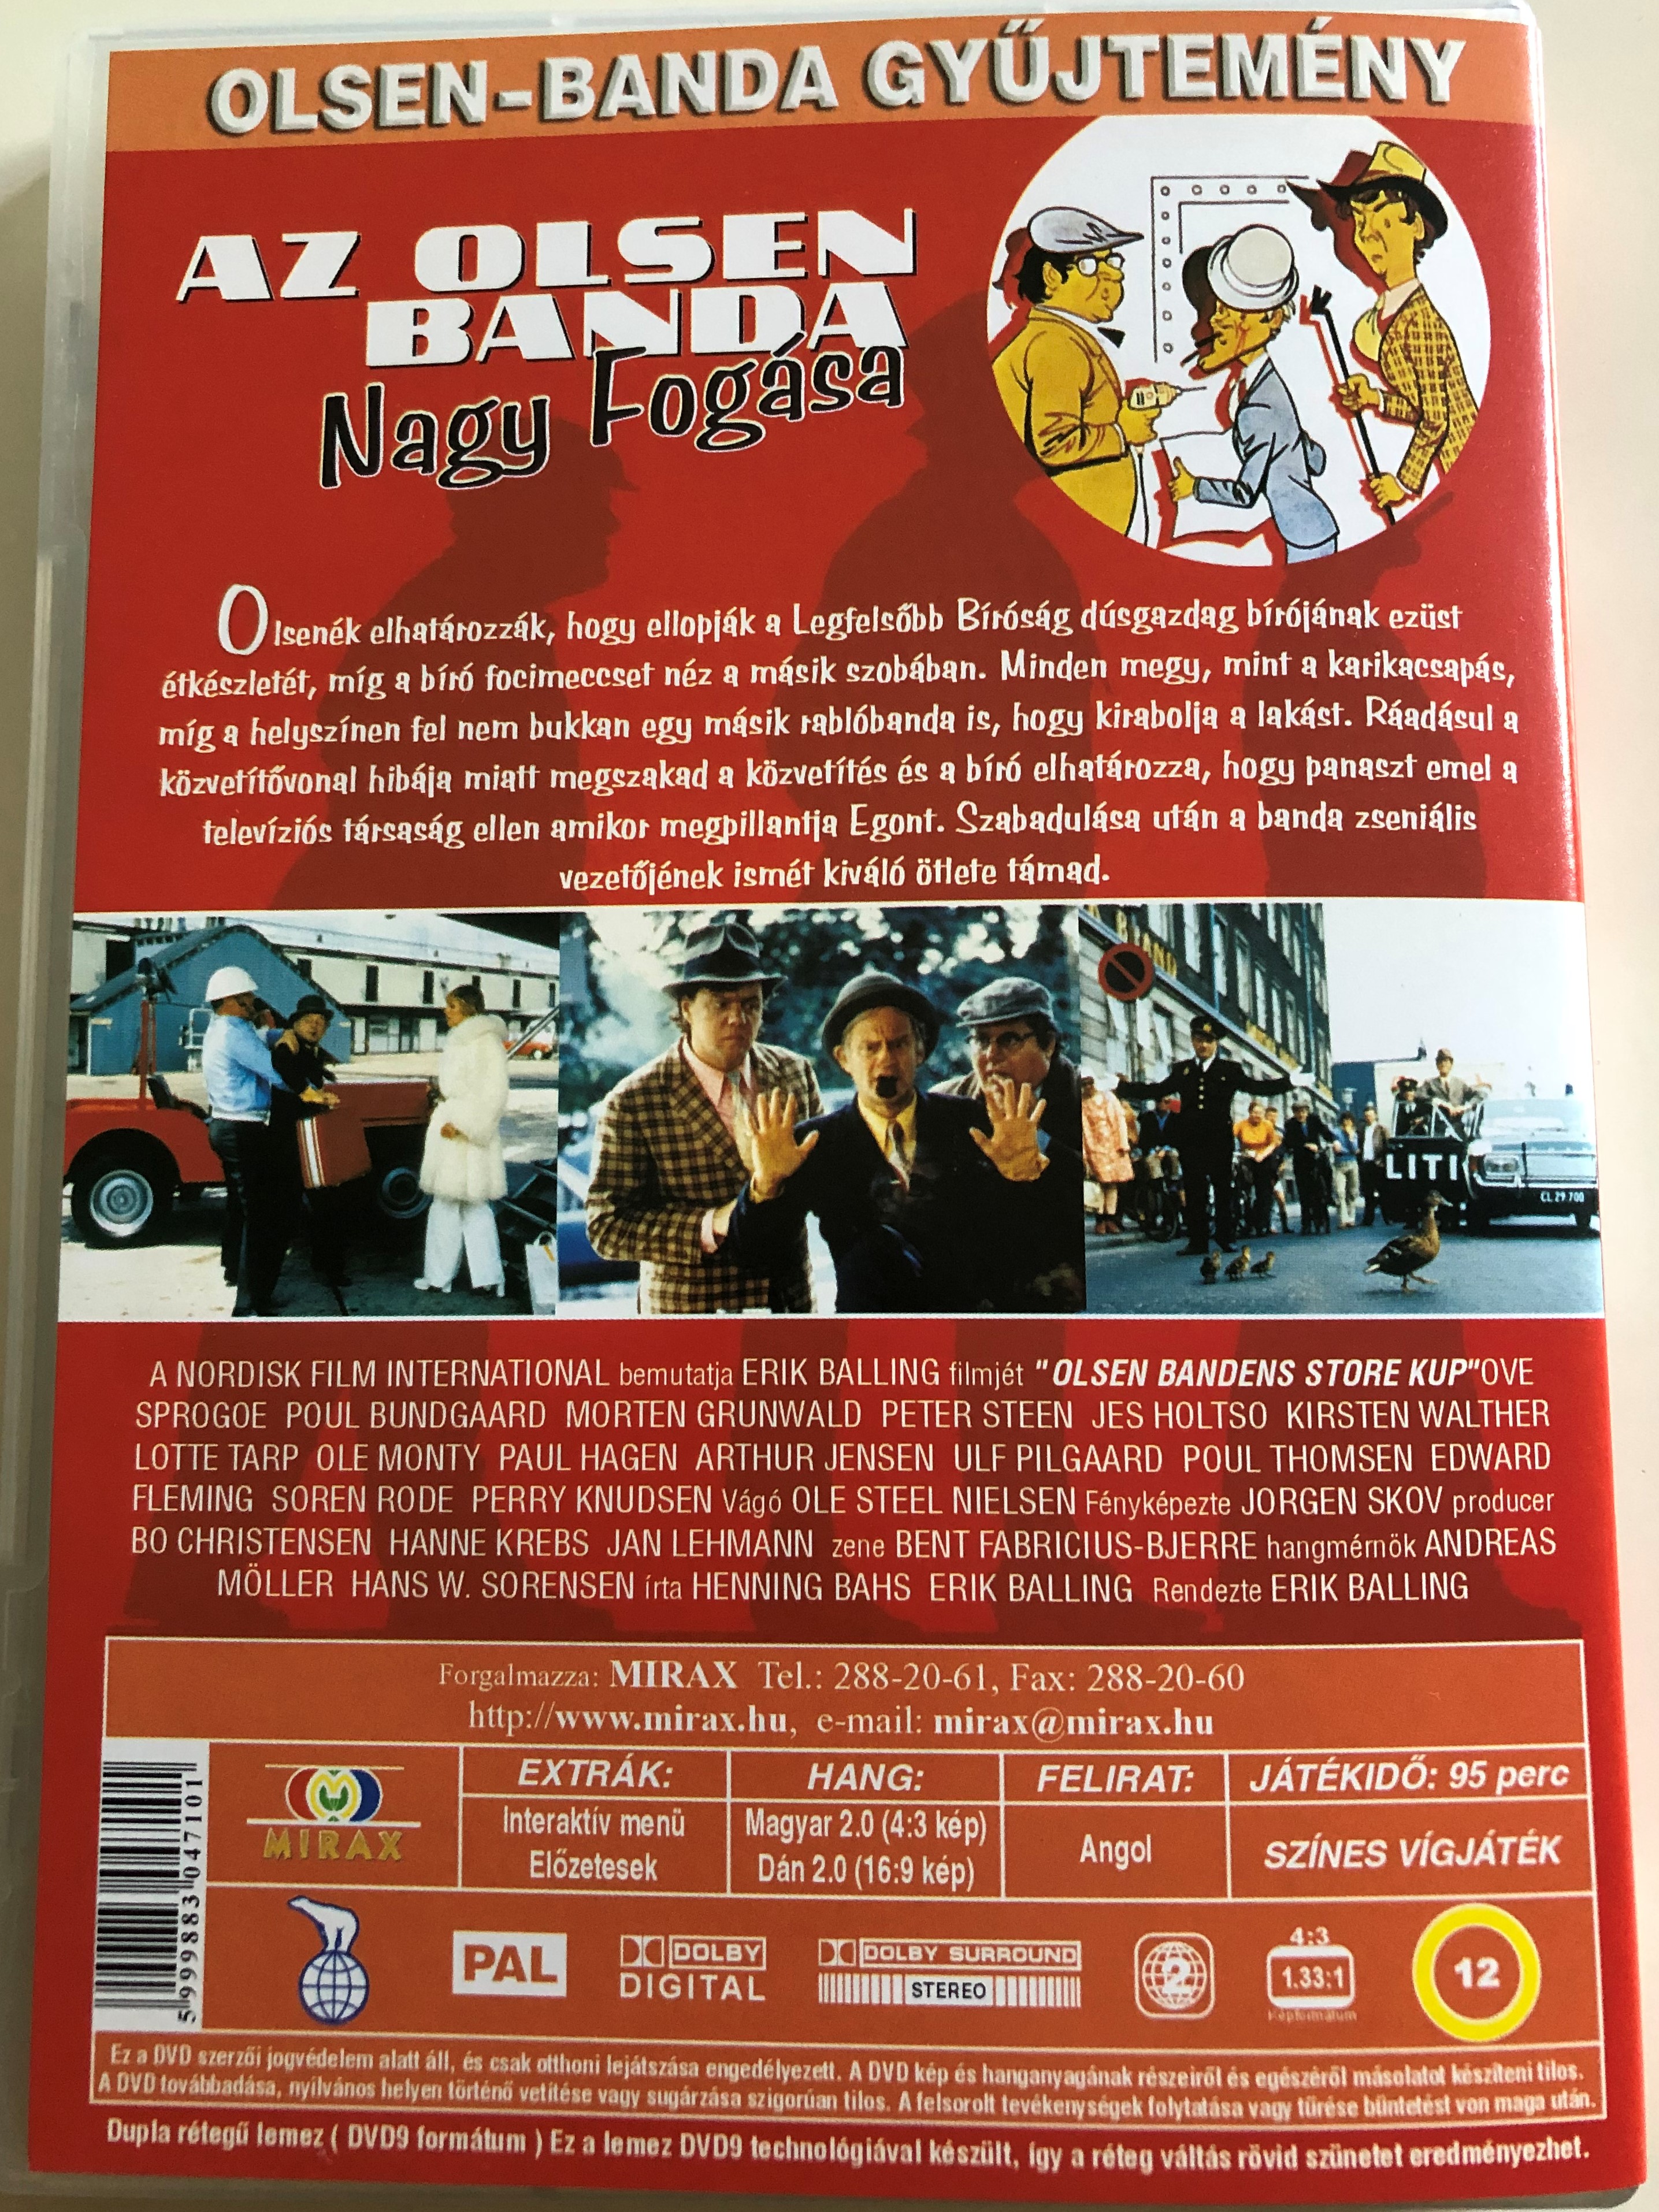 olsen-bandens-store-kup-dvd-1972-az-olsen-banda-nagy-fog-sa-directed-by-erik-balling-starring-ove-sprog-e-poul-bundgaard-morten-grunwald-peter-steen-jes-holtso-2-.jpg